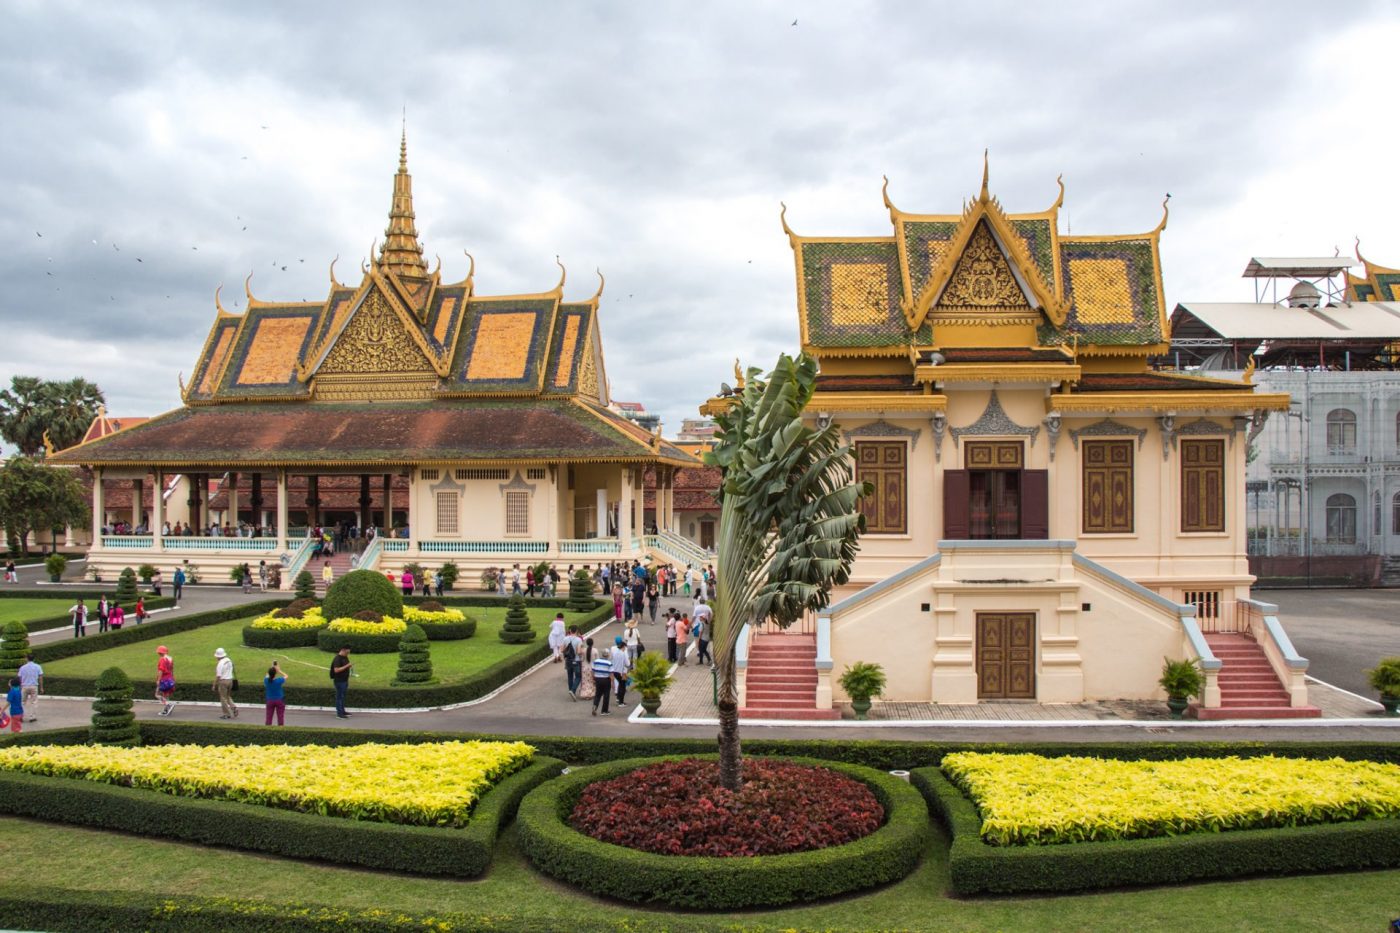 Phnom Penh - Royal Palace and Silver Pagoda